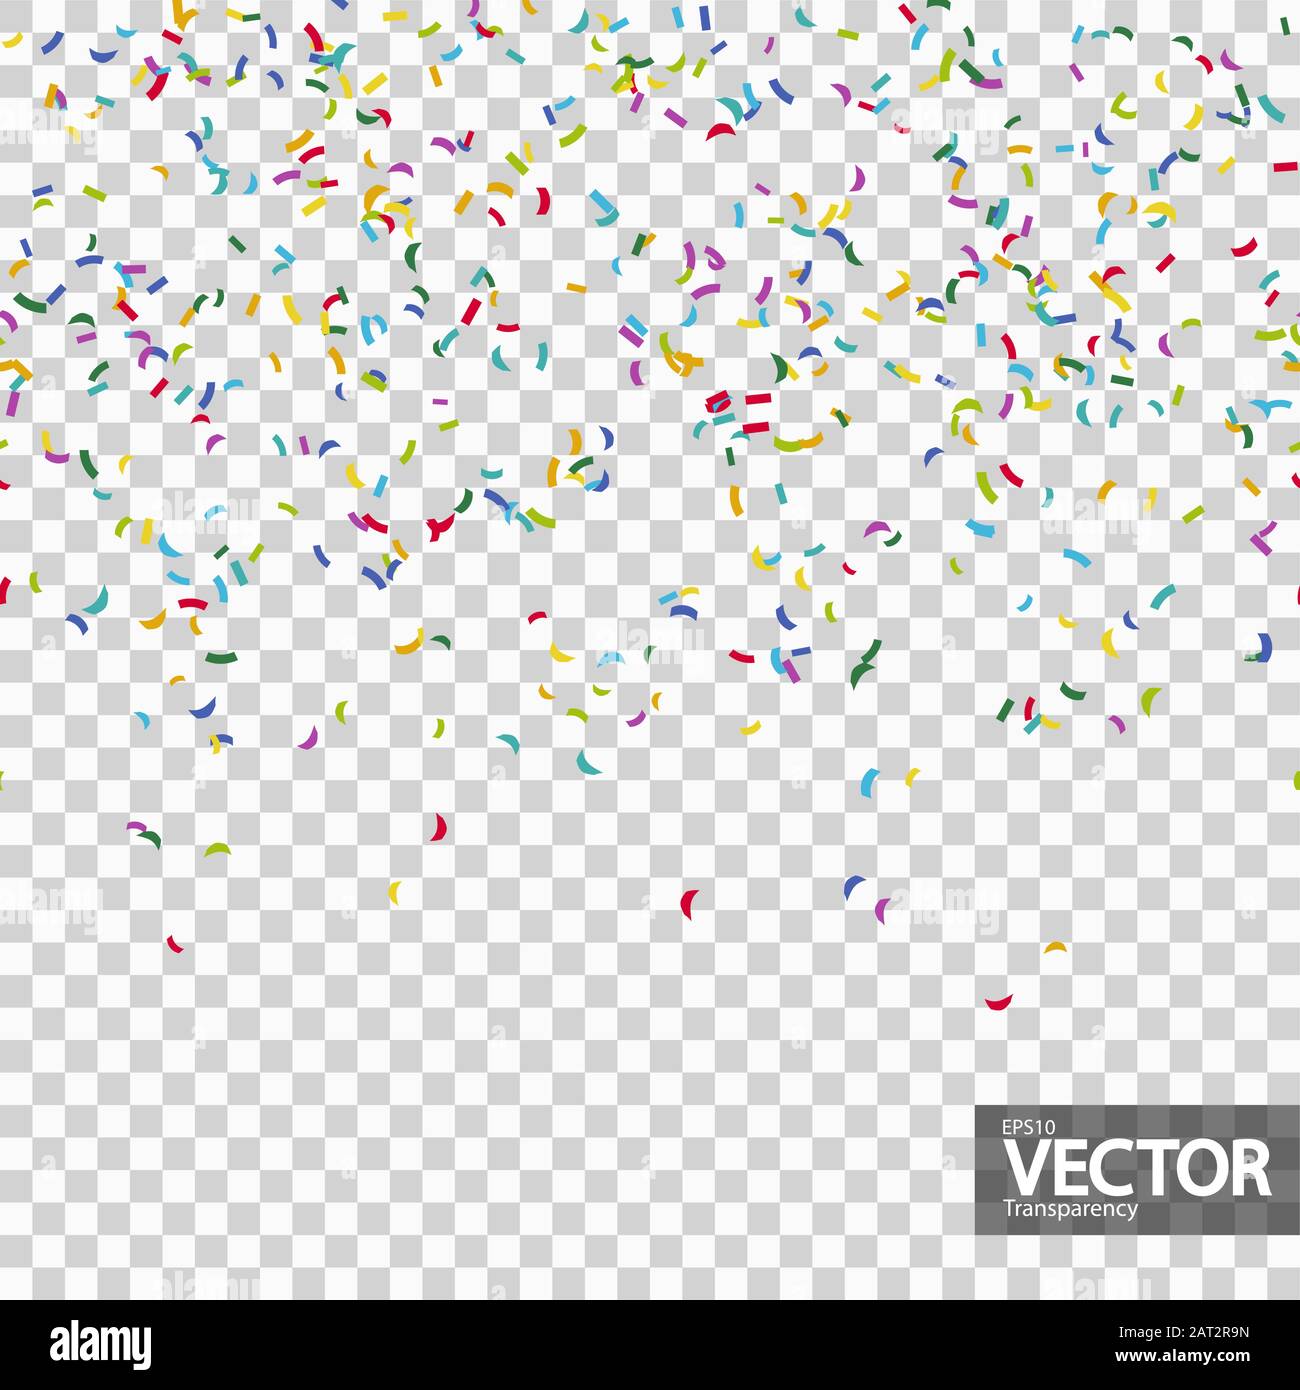 arrière-plan transparent avec différents confettis de couleur pour la fête avec transparence dans le fichier vectoriel Illustration de Vecteur